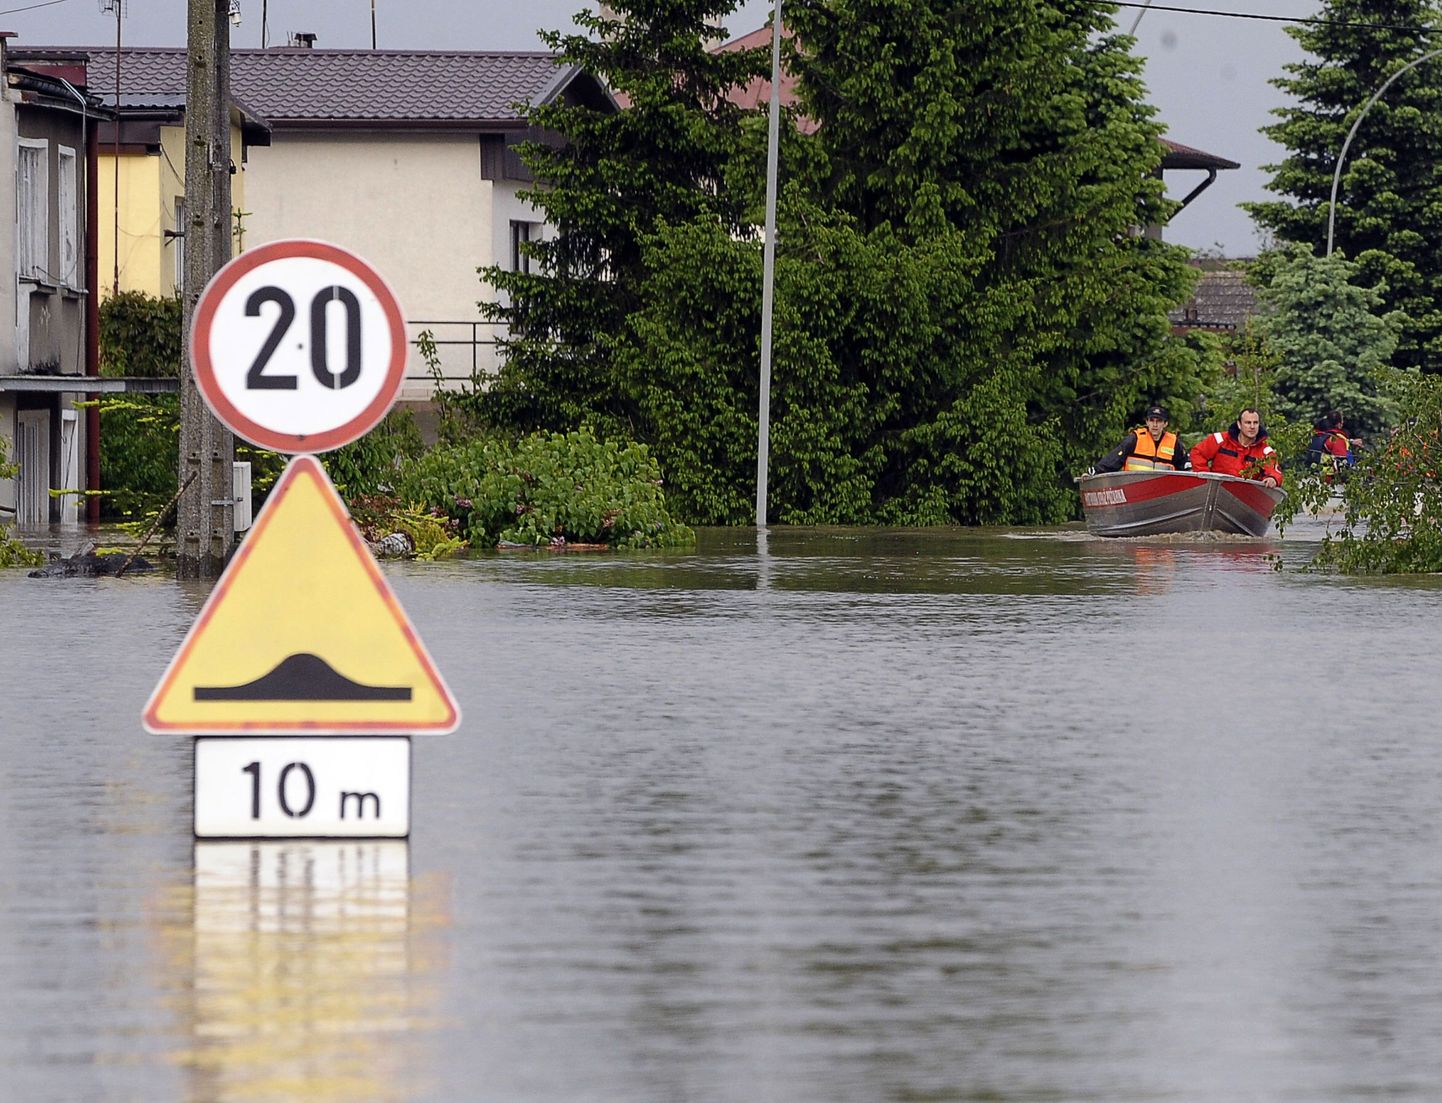 Poolat tabanud üleujutused.